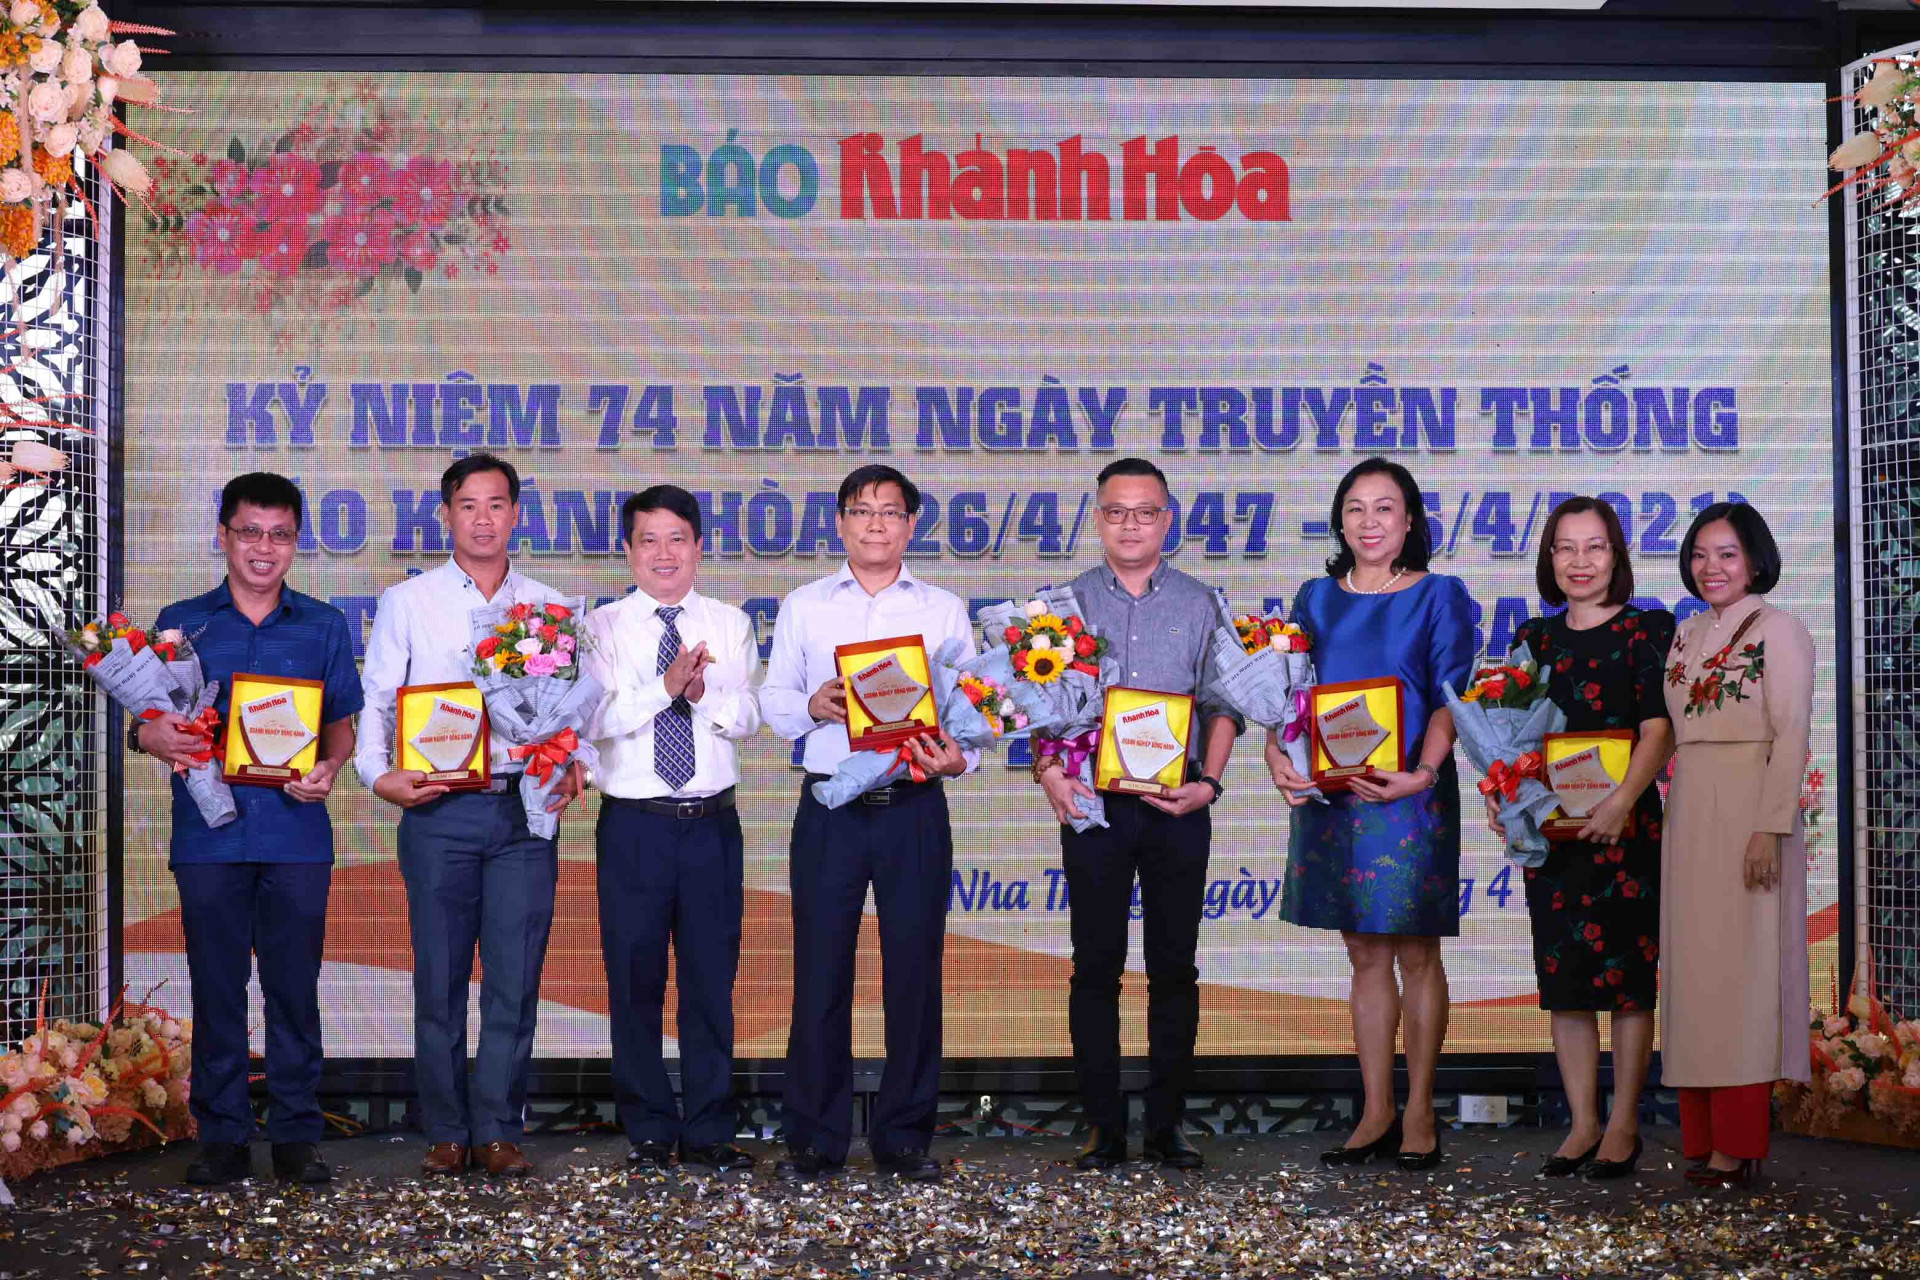 Lãnh đạo Báo Khánh Hòa trao kỷ niệm chương tri ân các doanh nghiệp, cá nhân đã đồng hành trong năm 2020.